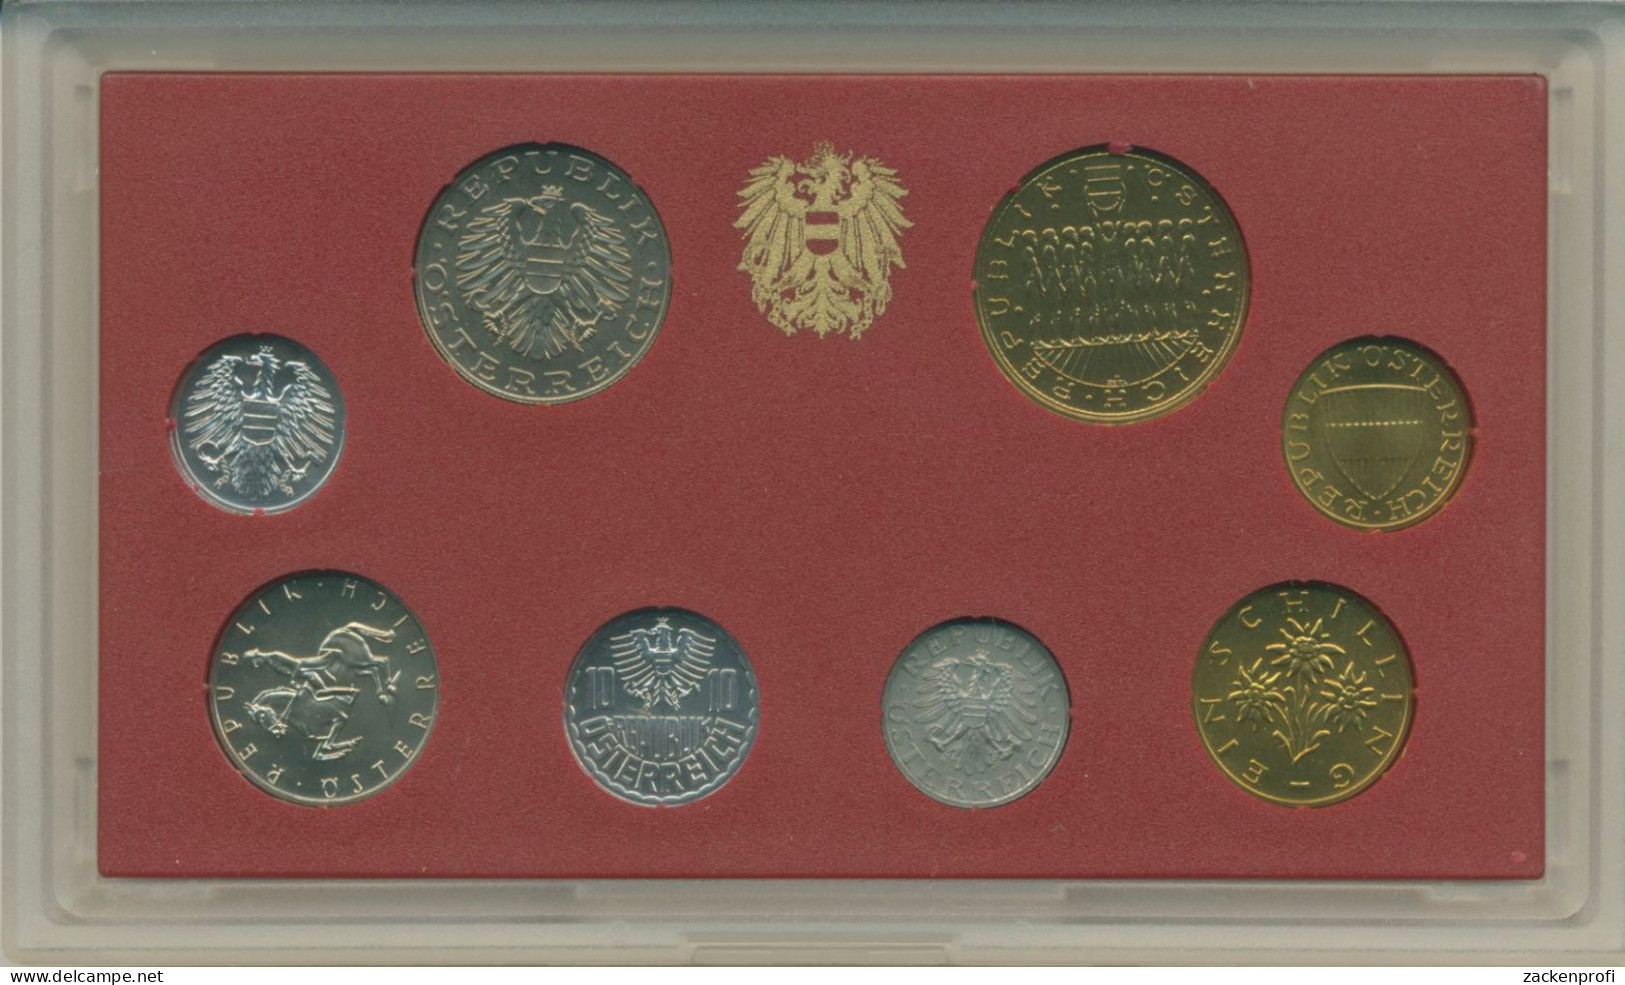 Österreich 1992 Kursmünzensatz 2 Groschen - 20 Schilling Im Blister, PP, (m5725) - Autriche